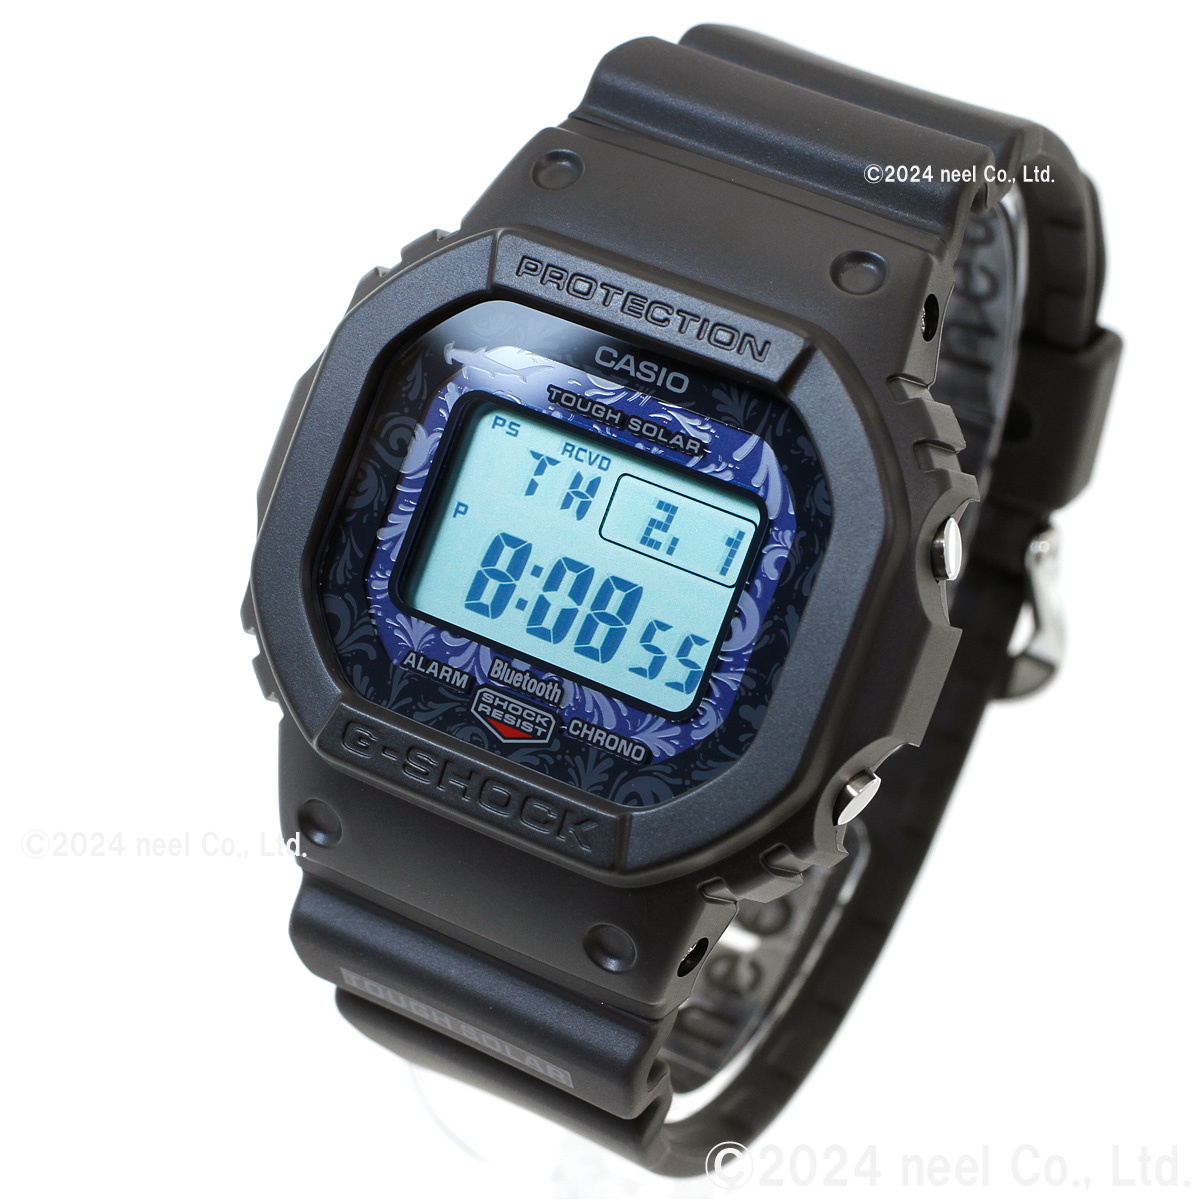 Gショック 電波ソーラー G-SHOCK 腕時計 GW-B5600CD-1A2JR チャールズ・ダーウィン財団コラボ ジーショック